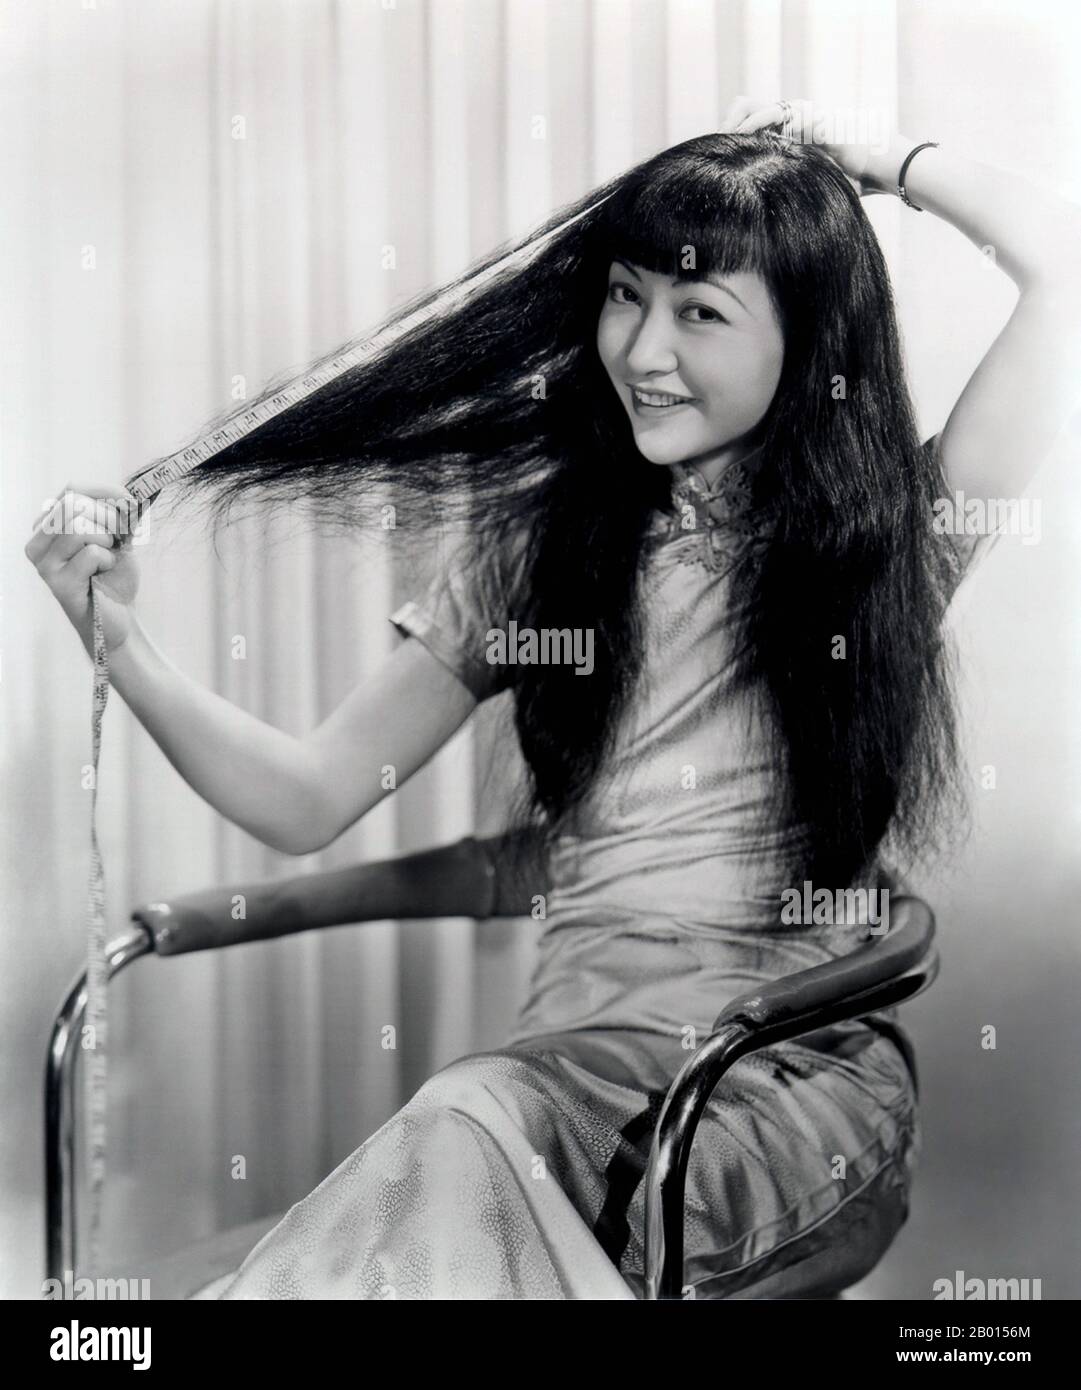 États-Unis : Anna May Wong, star de cinéma sino-américaine (3 janvier 1905 – 3 février 1961), ch. années 1930. Anna May Wong était une actrice américaine, la première star de cinéma américaine chinoise et la première américaine asiatique à devenir une star internationale. Sa longue et variée carrière s'est étendue à la fois au cinéma silencieux et au son, à la télévision, à la scène et à la radio. Né près du quartier chinois de Los Angeles, de parents sino-américains de deuxième génération, Wong s'est fait infecter par les films et a commencé à jouer dans les films à un âge précoce. Banque D'Images